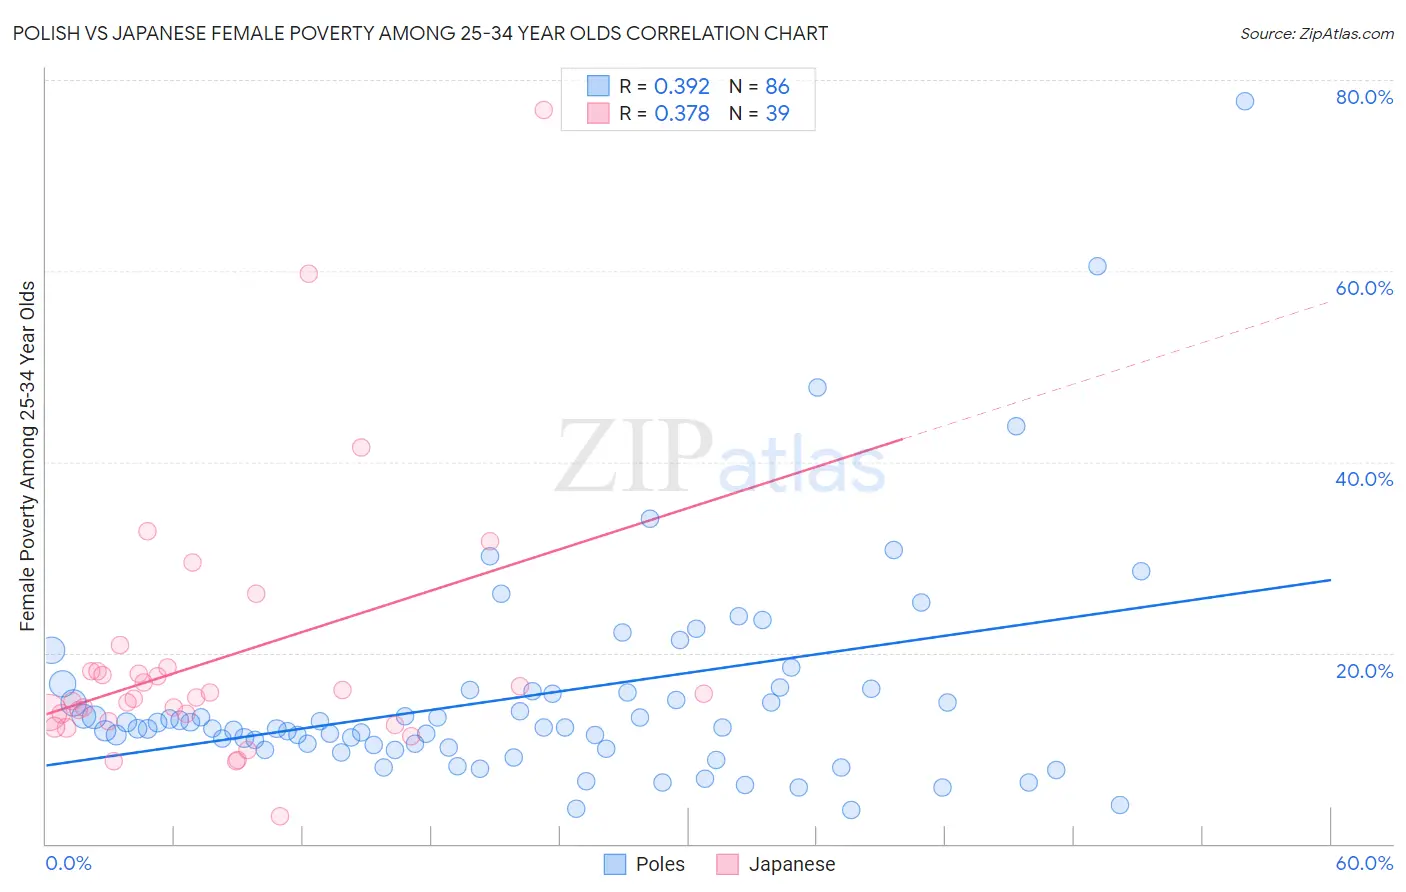 Polish vs Japanese Female Poverty Among 25-34 Year Olds